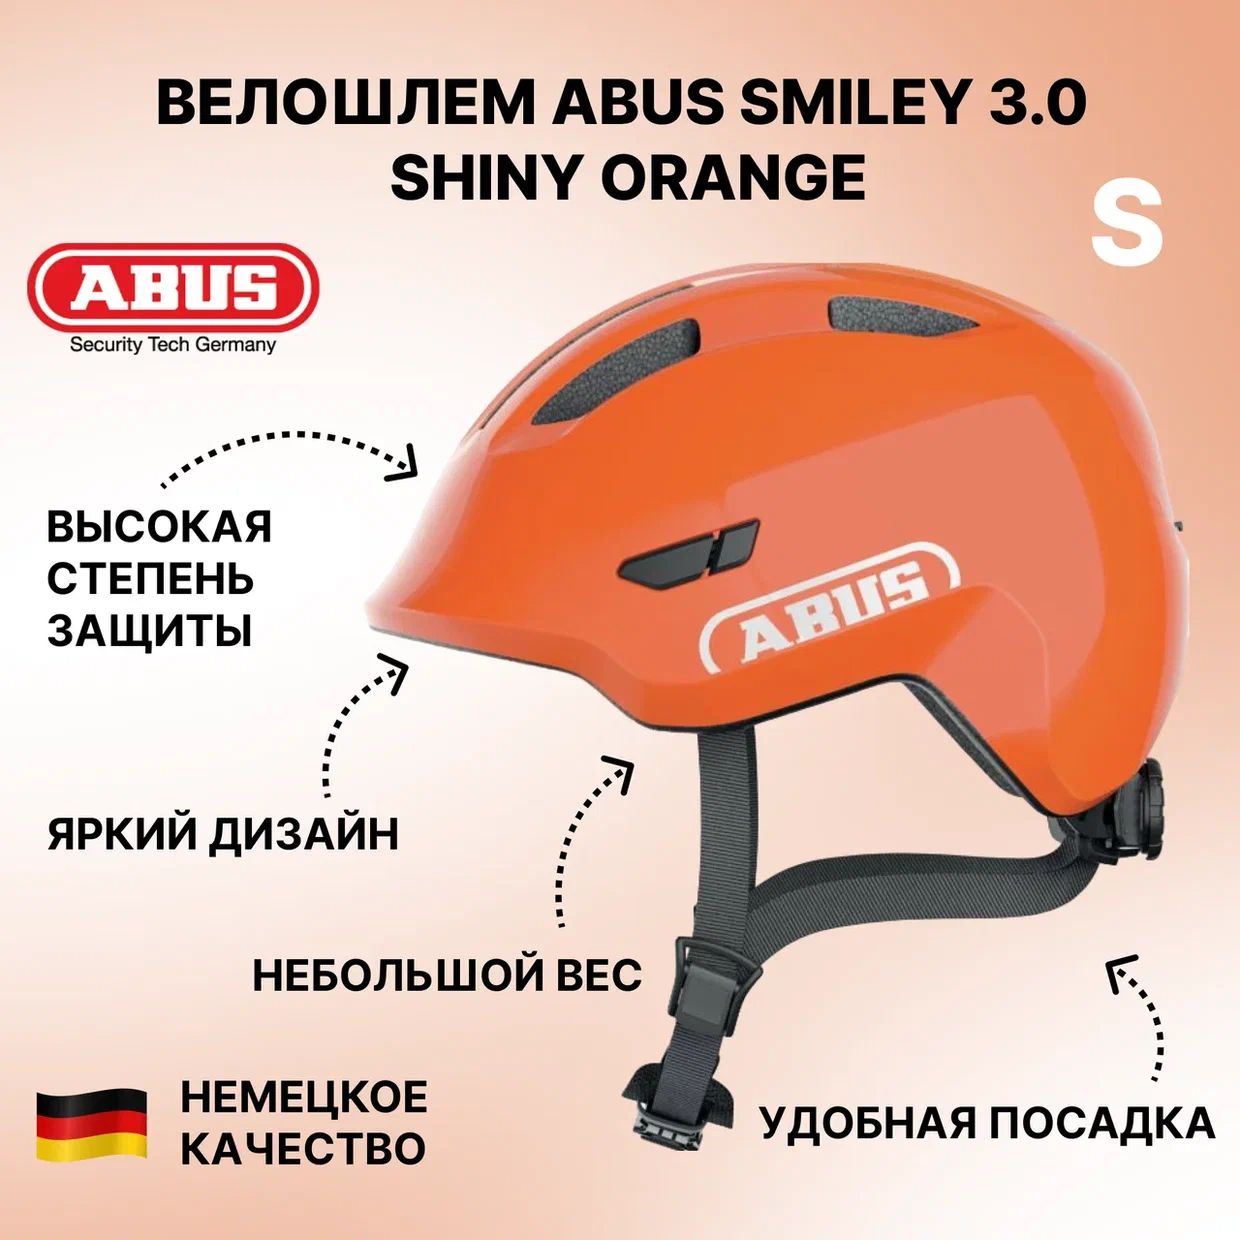 Велошлем ABUS Smiley 3.0 shiny orange